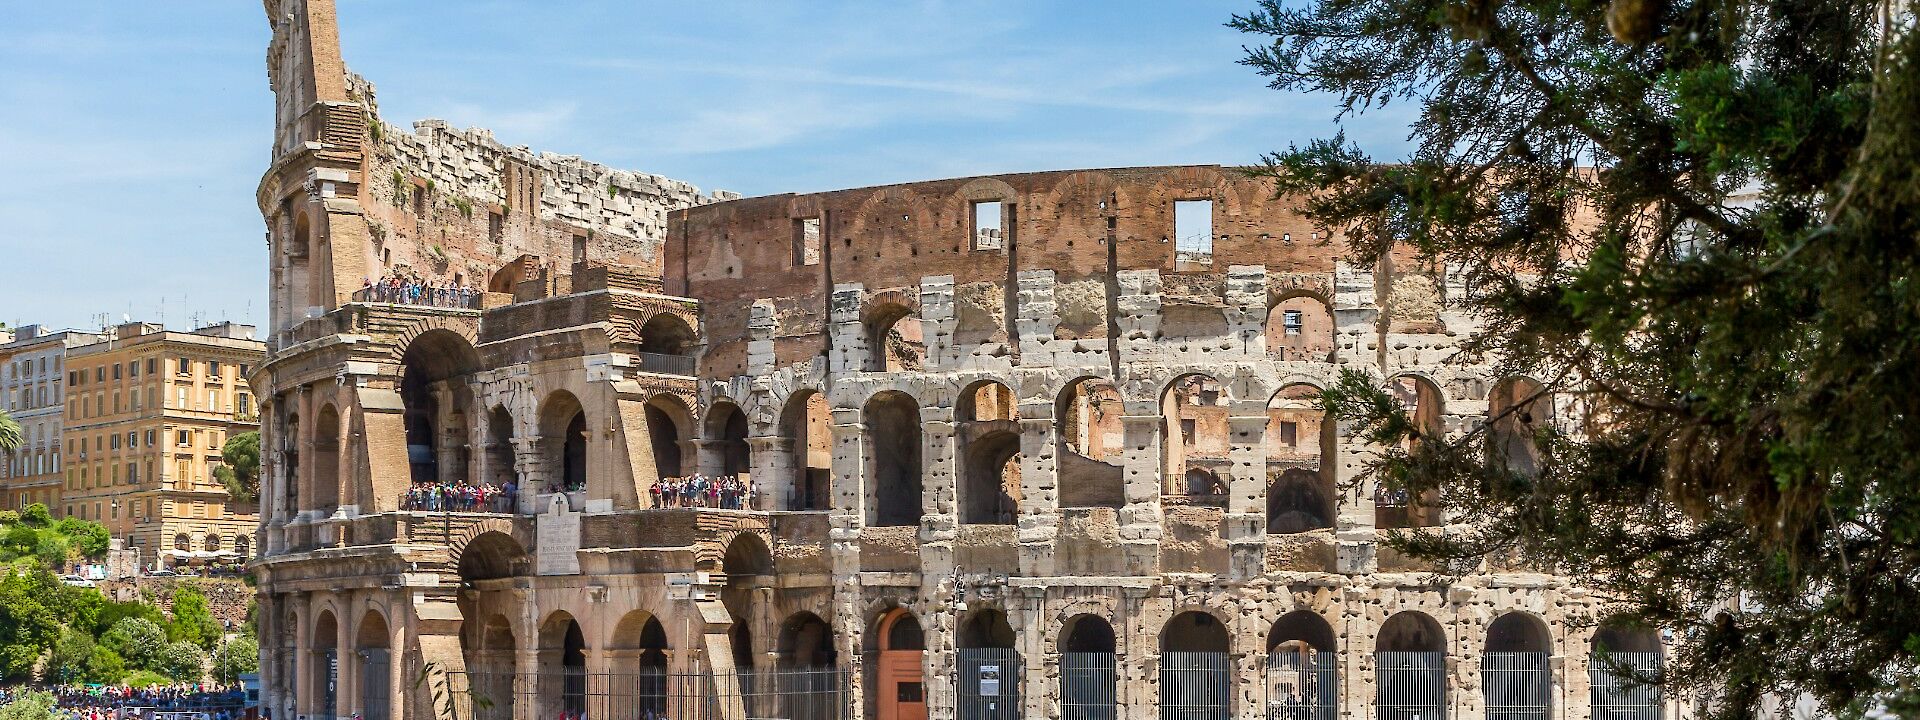 Colosseum, Rome, Italy. Unsplash: Den Harrson